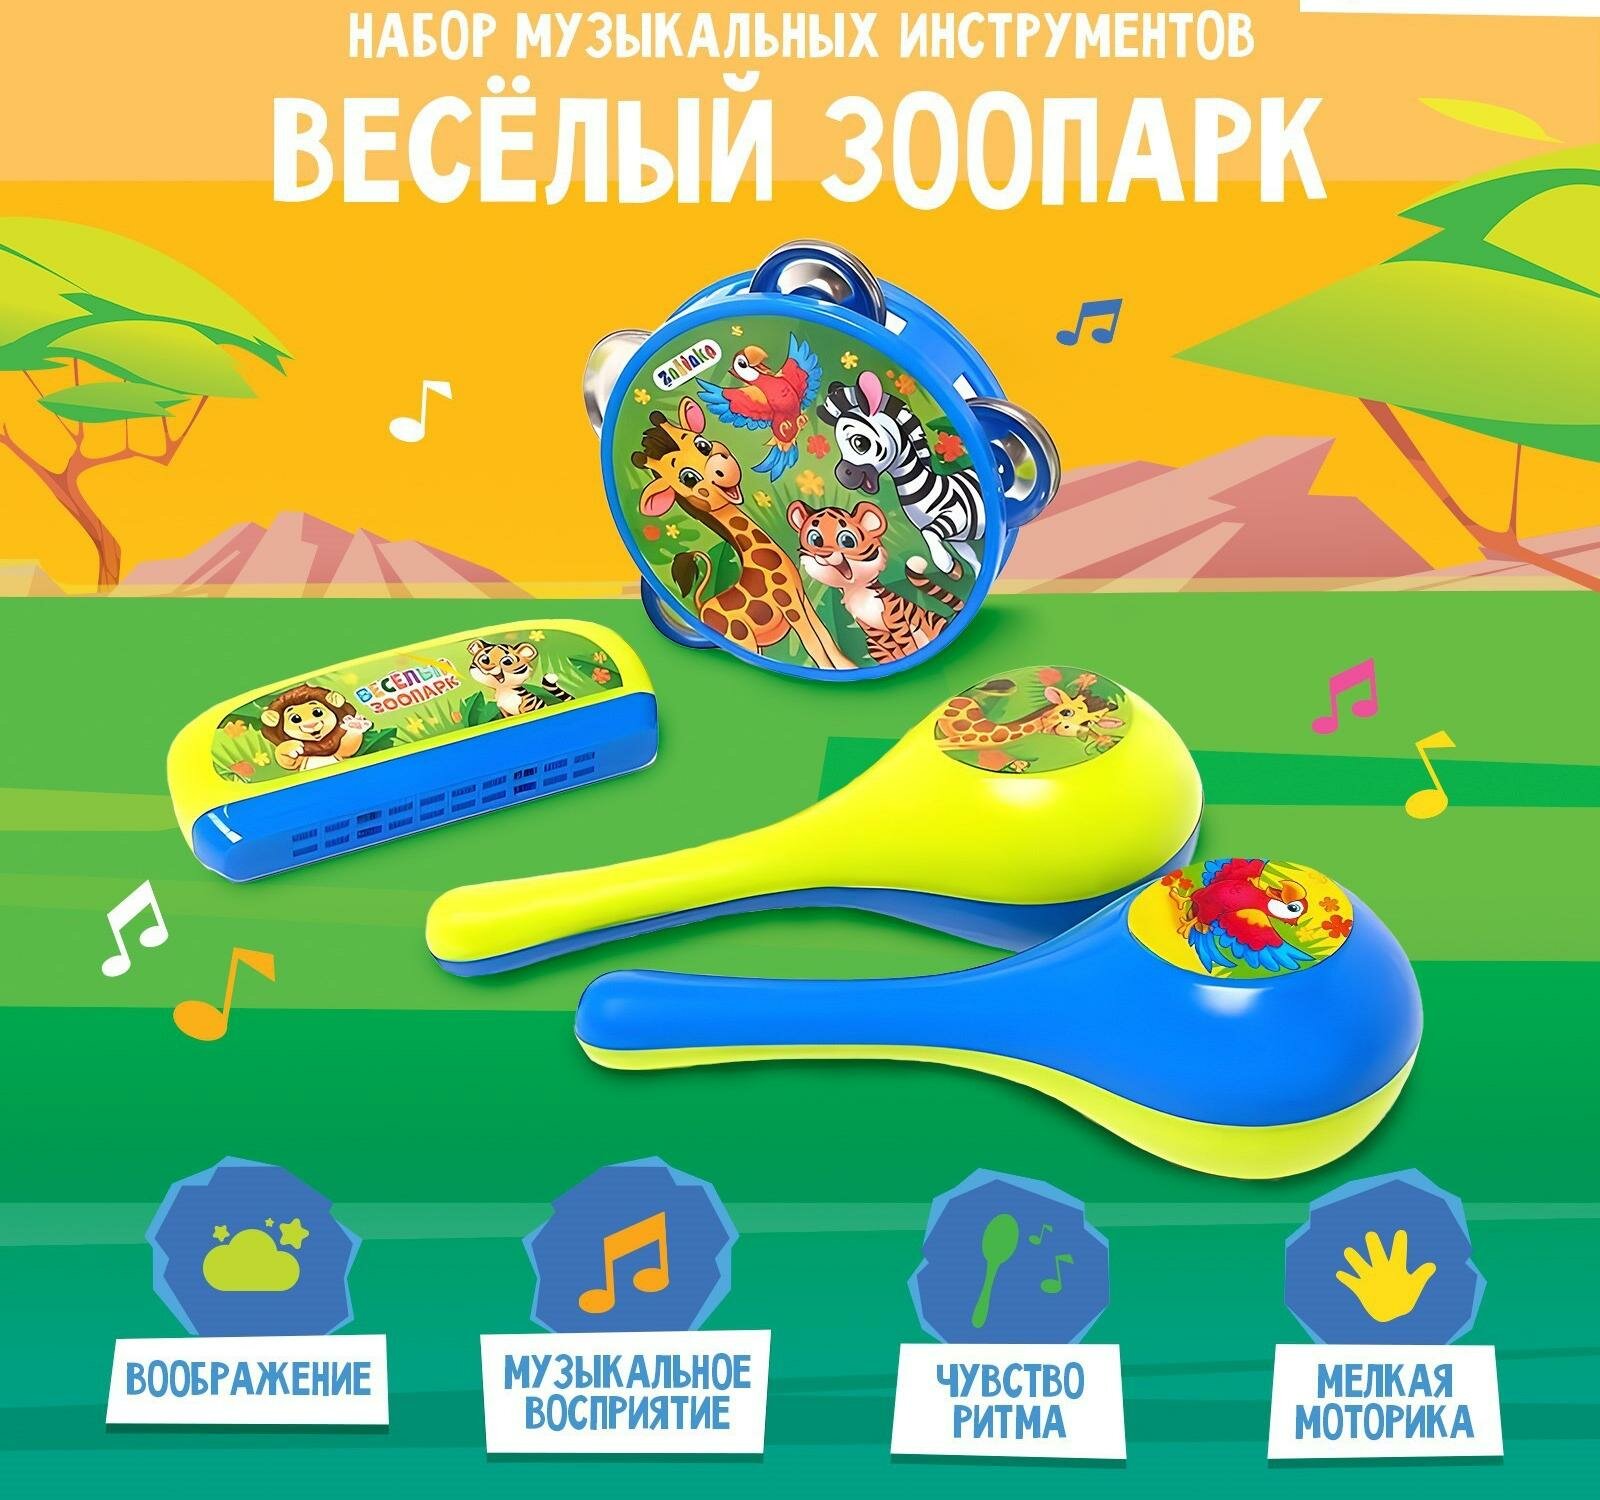 Набор музыкальных инструментов "Весёлый зоопарк": бубен, 2 маракаса, губная гармошка, микс